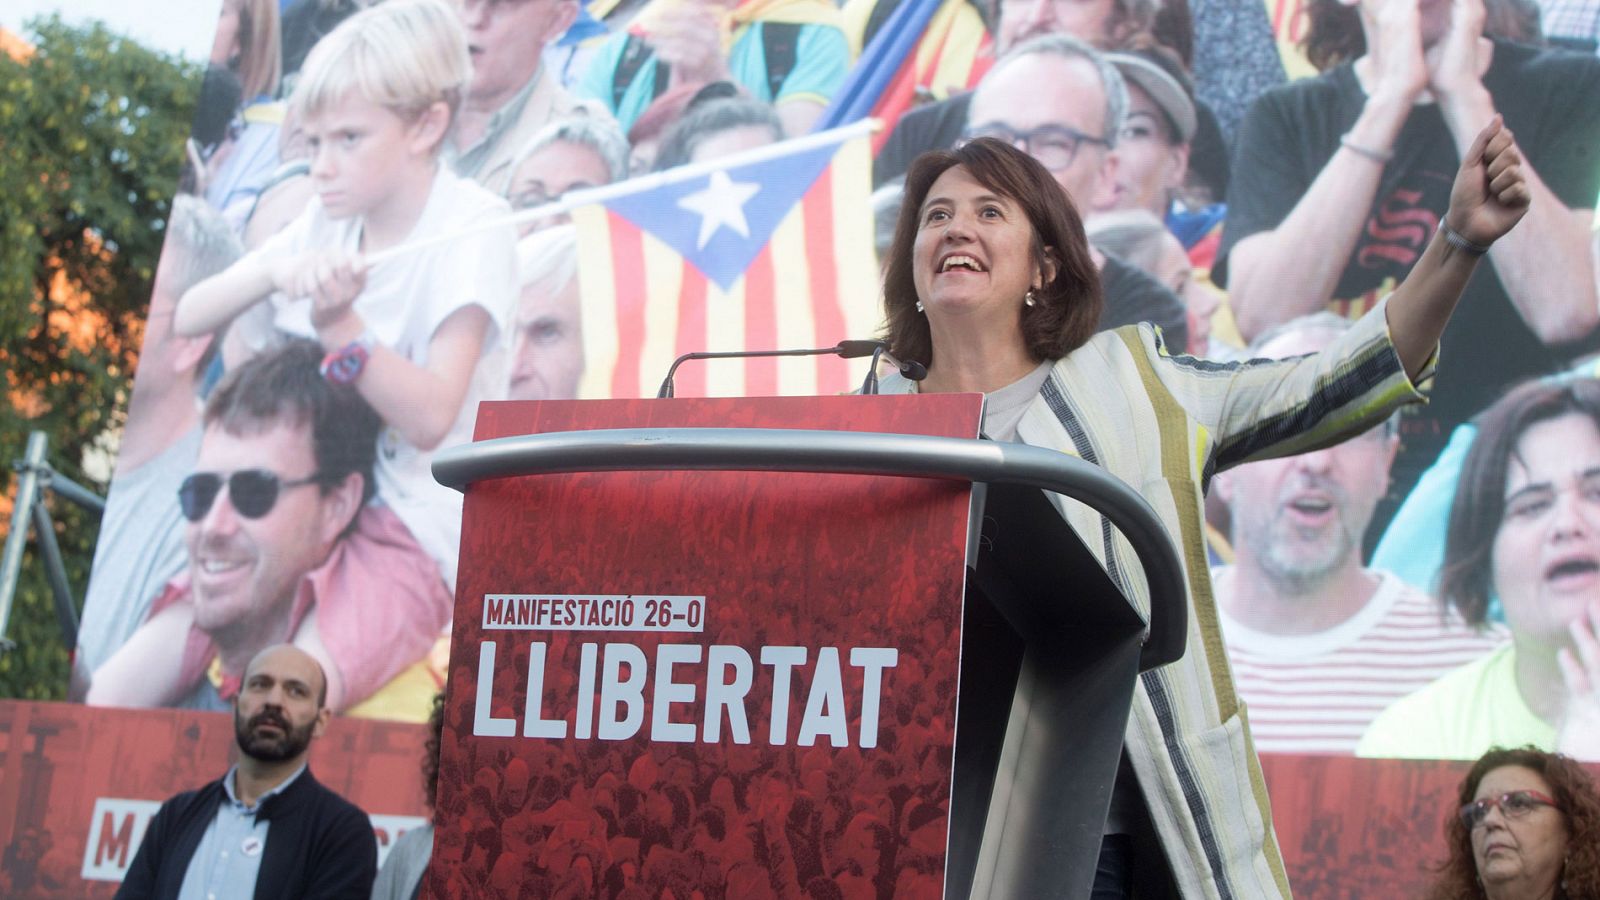 Sociedad Civil Catalana denuncia a la presidenta de la ANC por apología de la violencia - RTVE.es